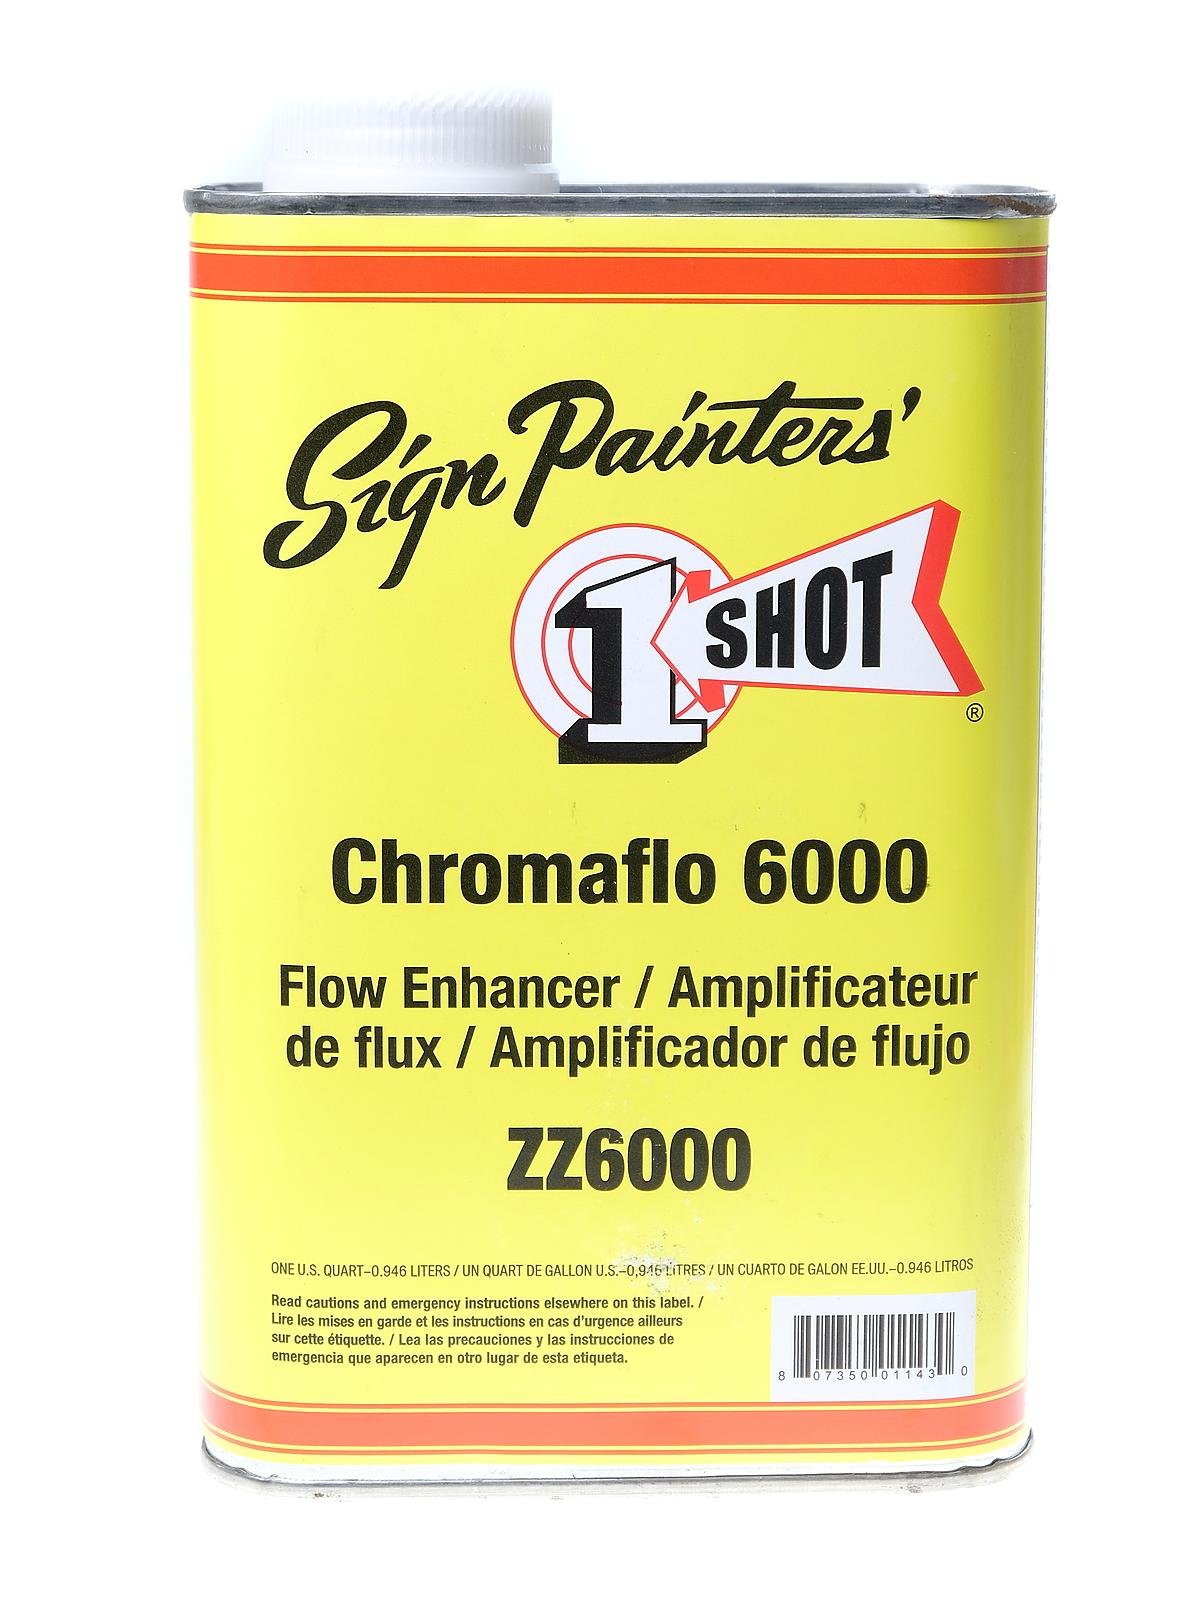 1-Shot - Chromaflo 6000 Flow Enhancer